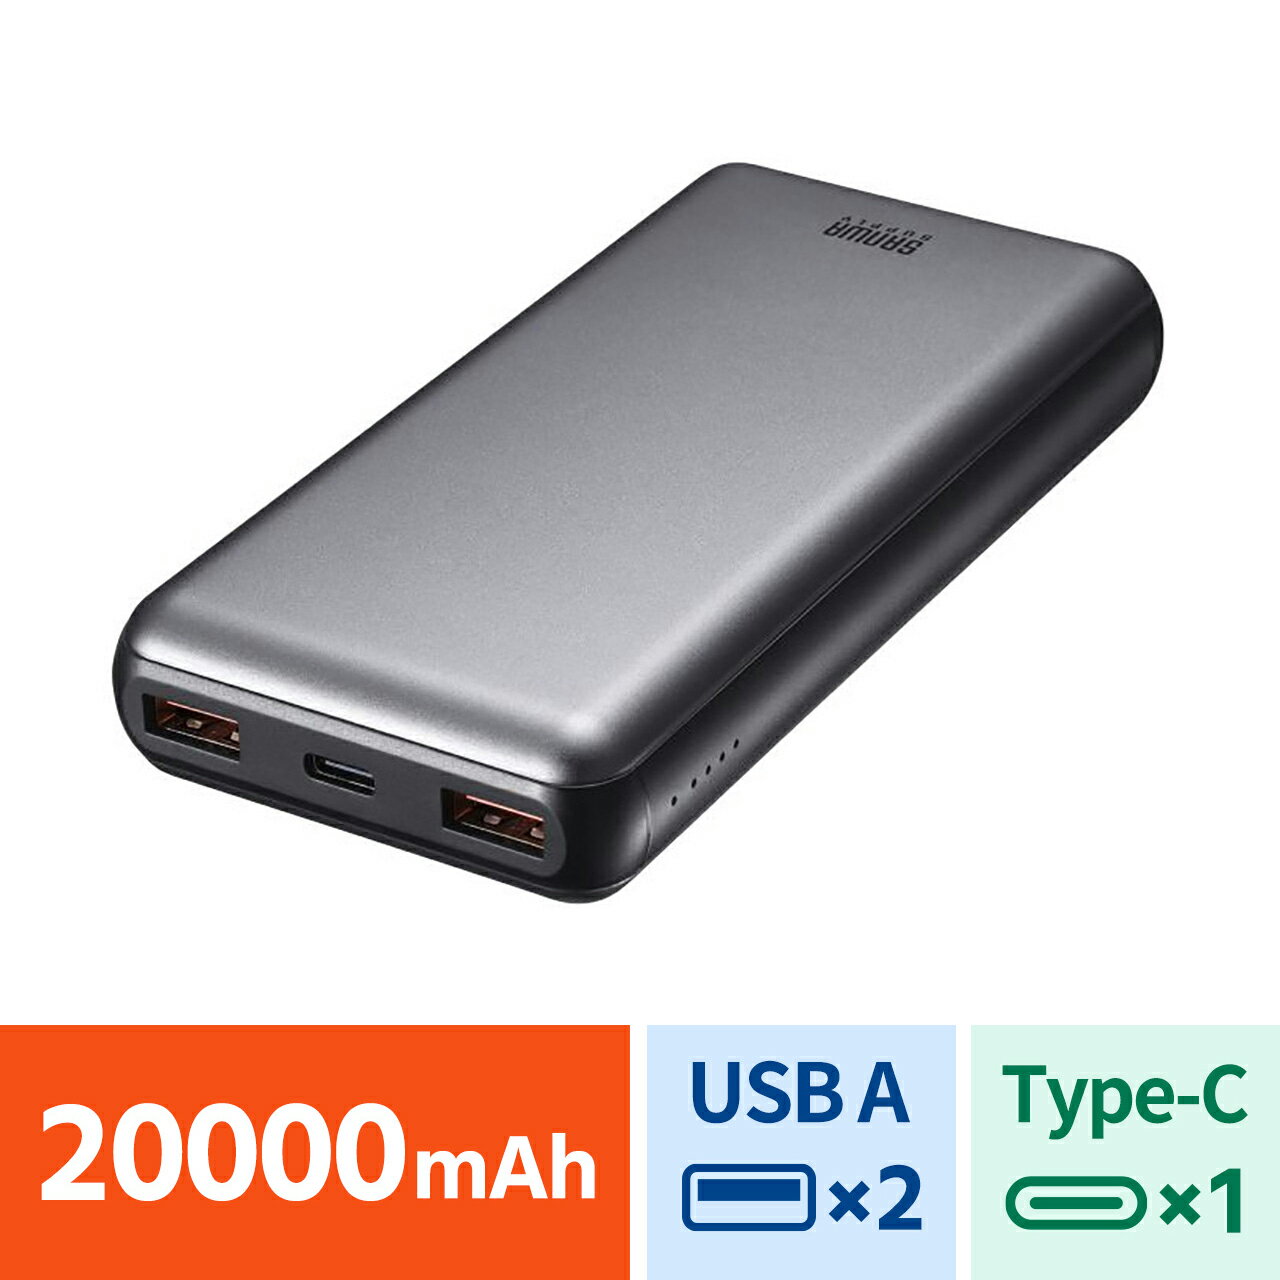 モバイルバッテリー 20000mAh 大容量 高速充電 USB PD 20W出力 3台同時充電 iPhone スマホ タブレット Type-C 収納ポーチ付き BTL-RDC29 サンワサプライ